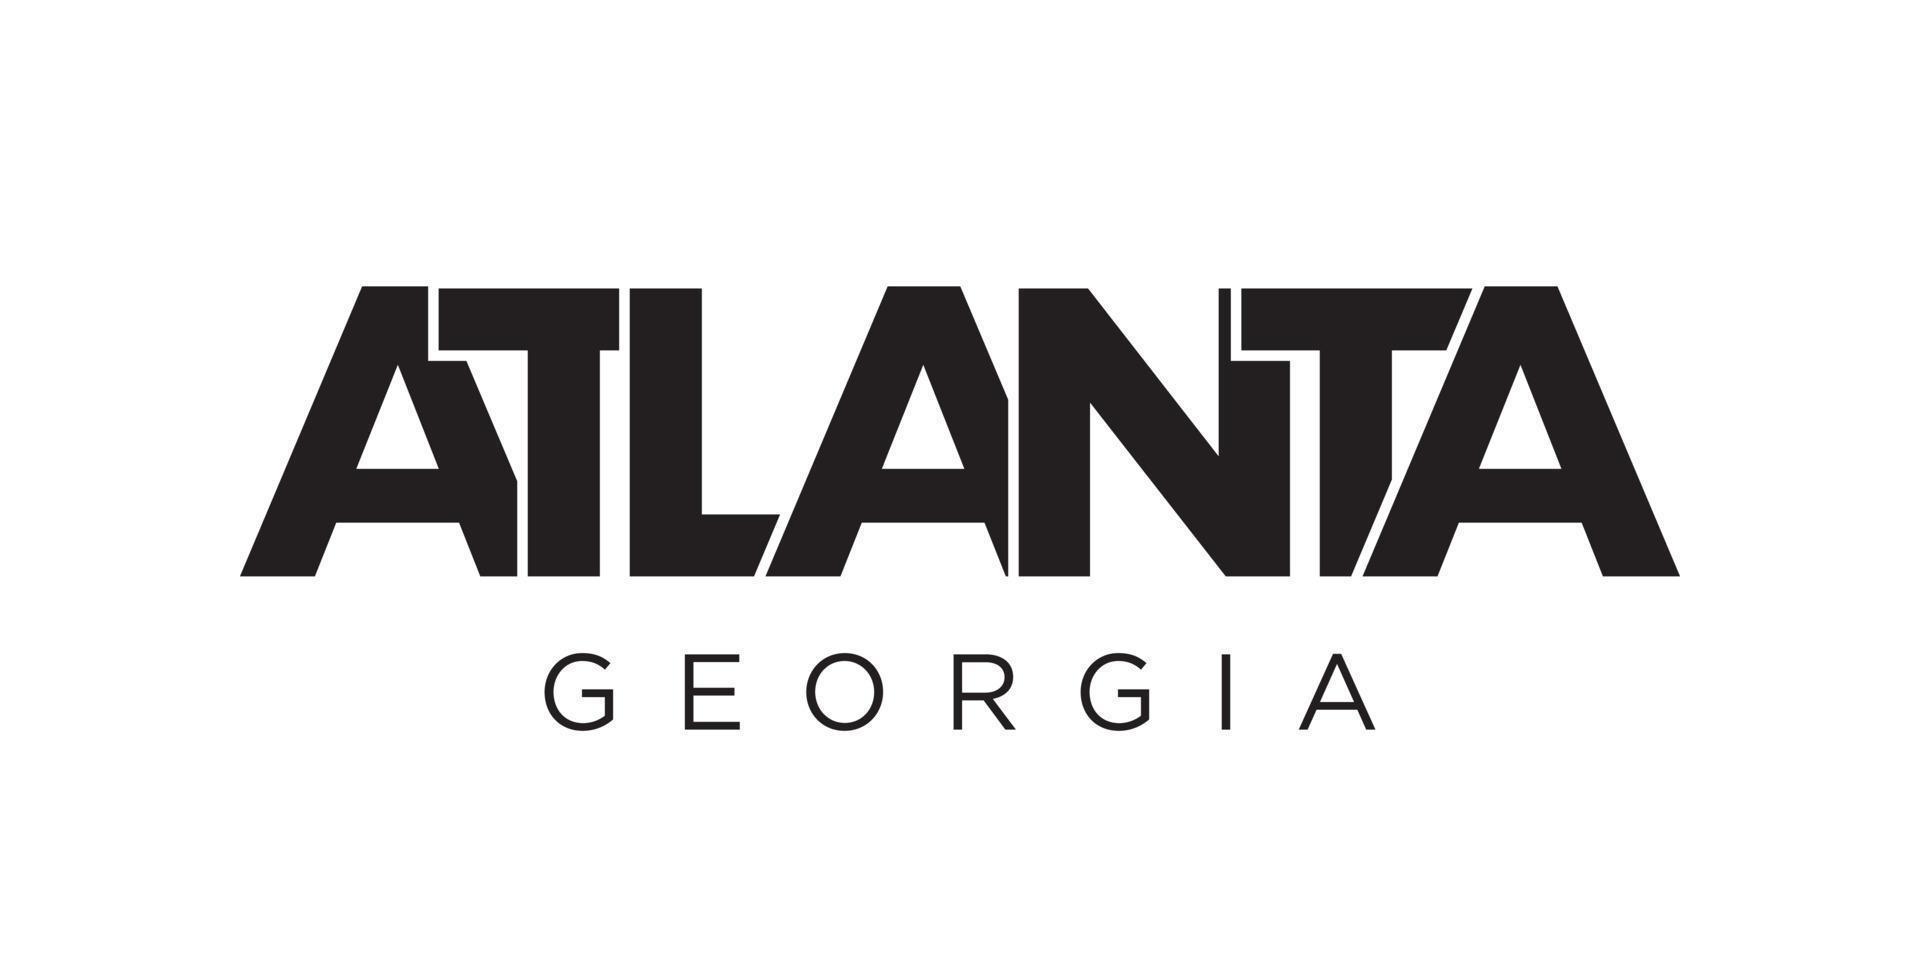 Atlanta, Georgia, USA typography slogan design. America logo with ...